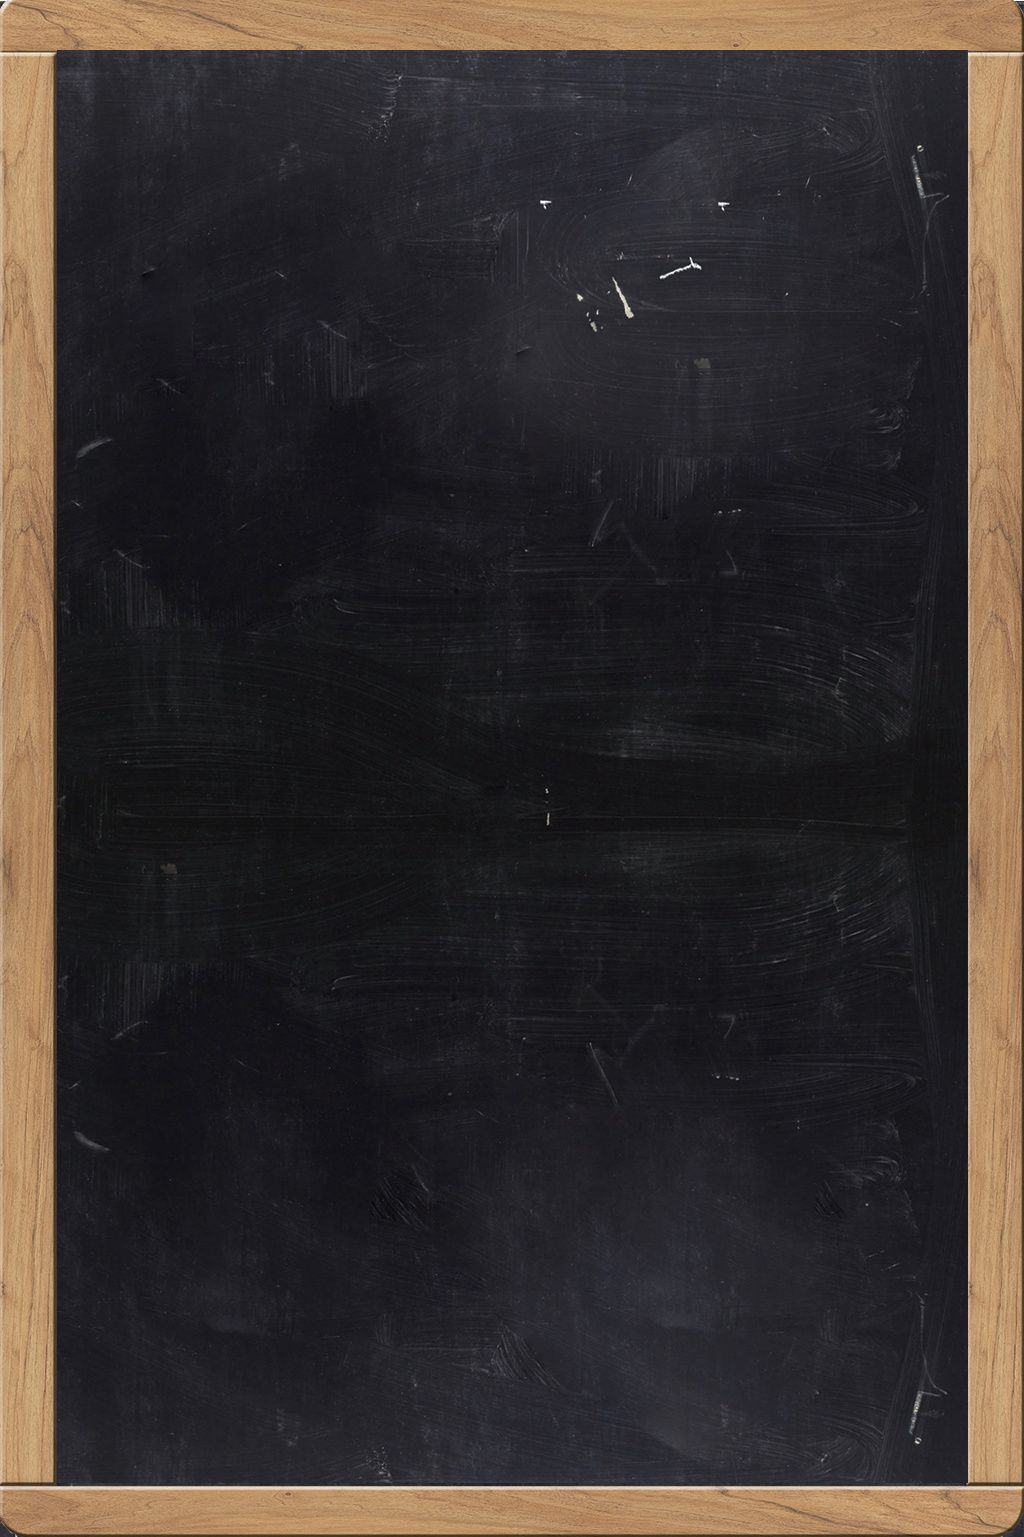 Vintage Blackboard Wall Chalkboard In Black Background